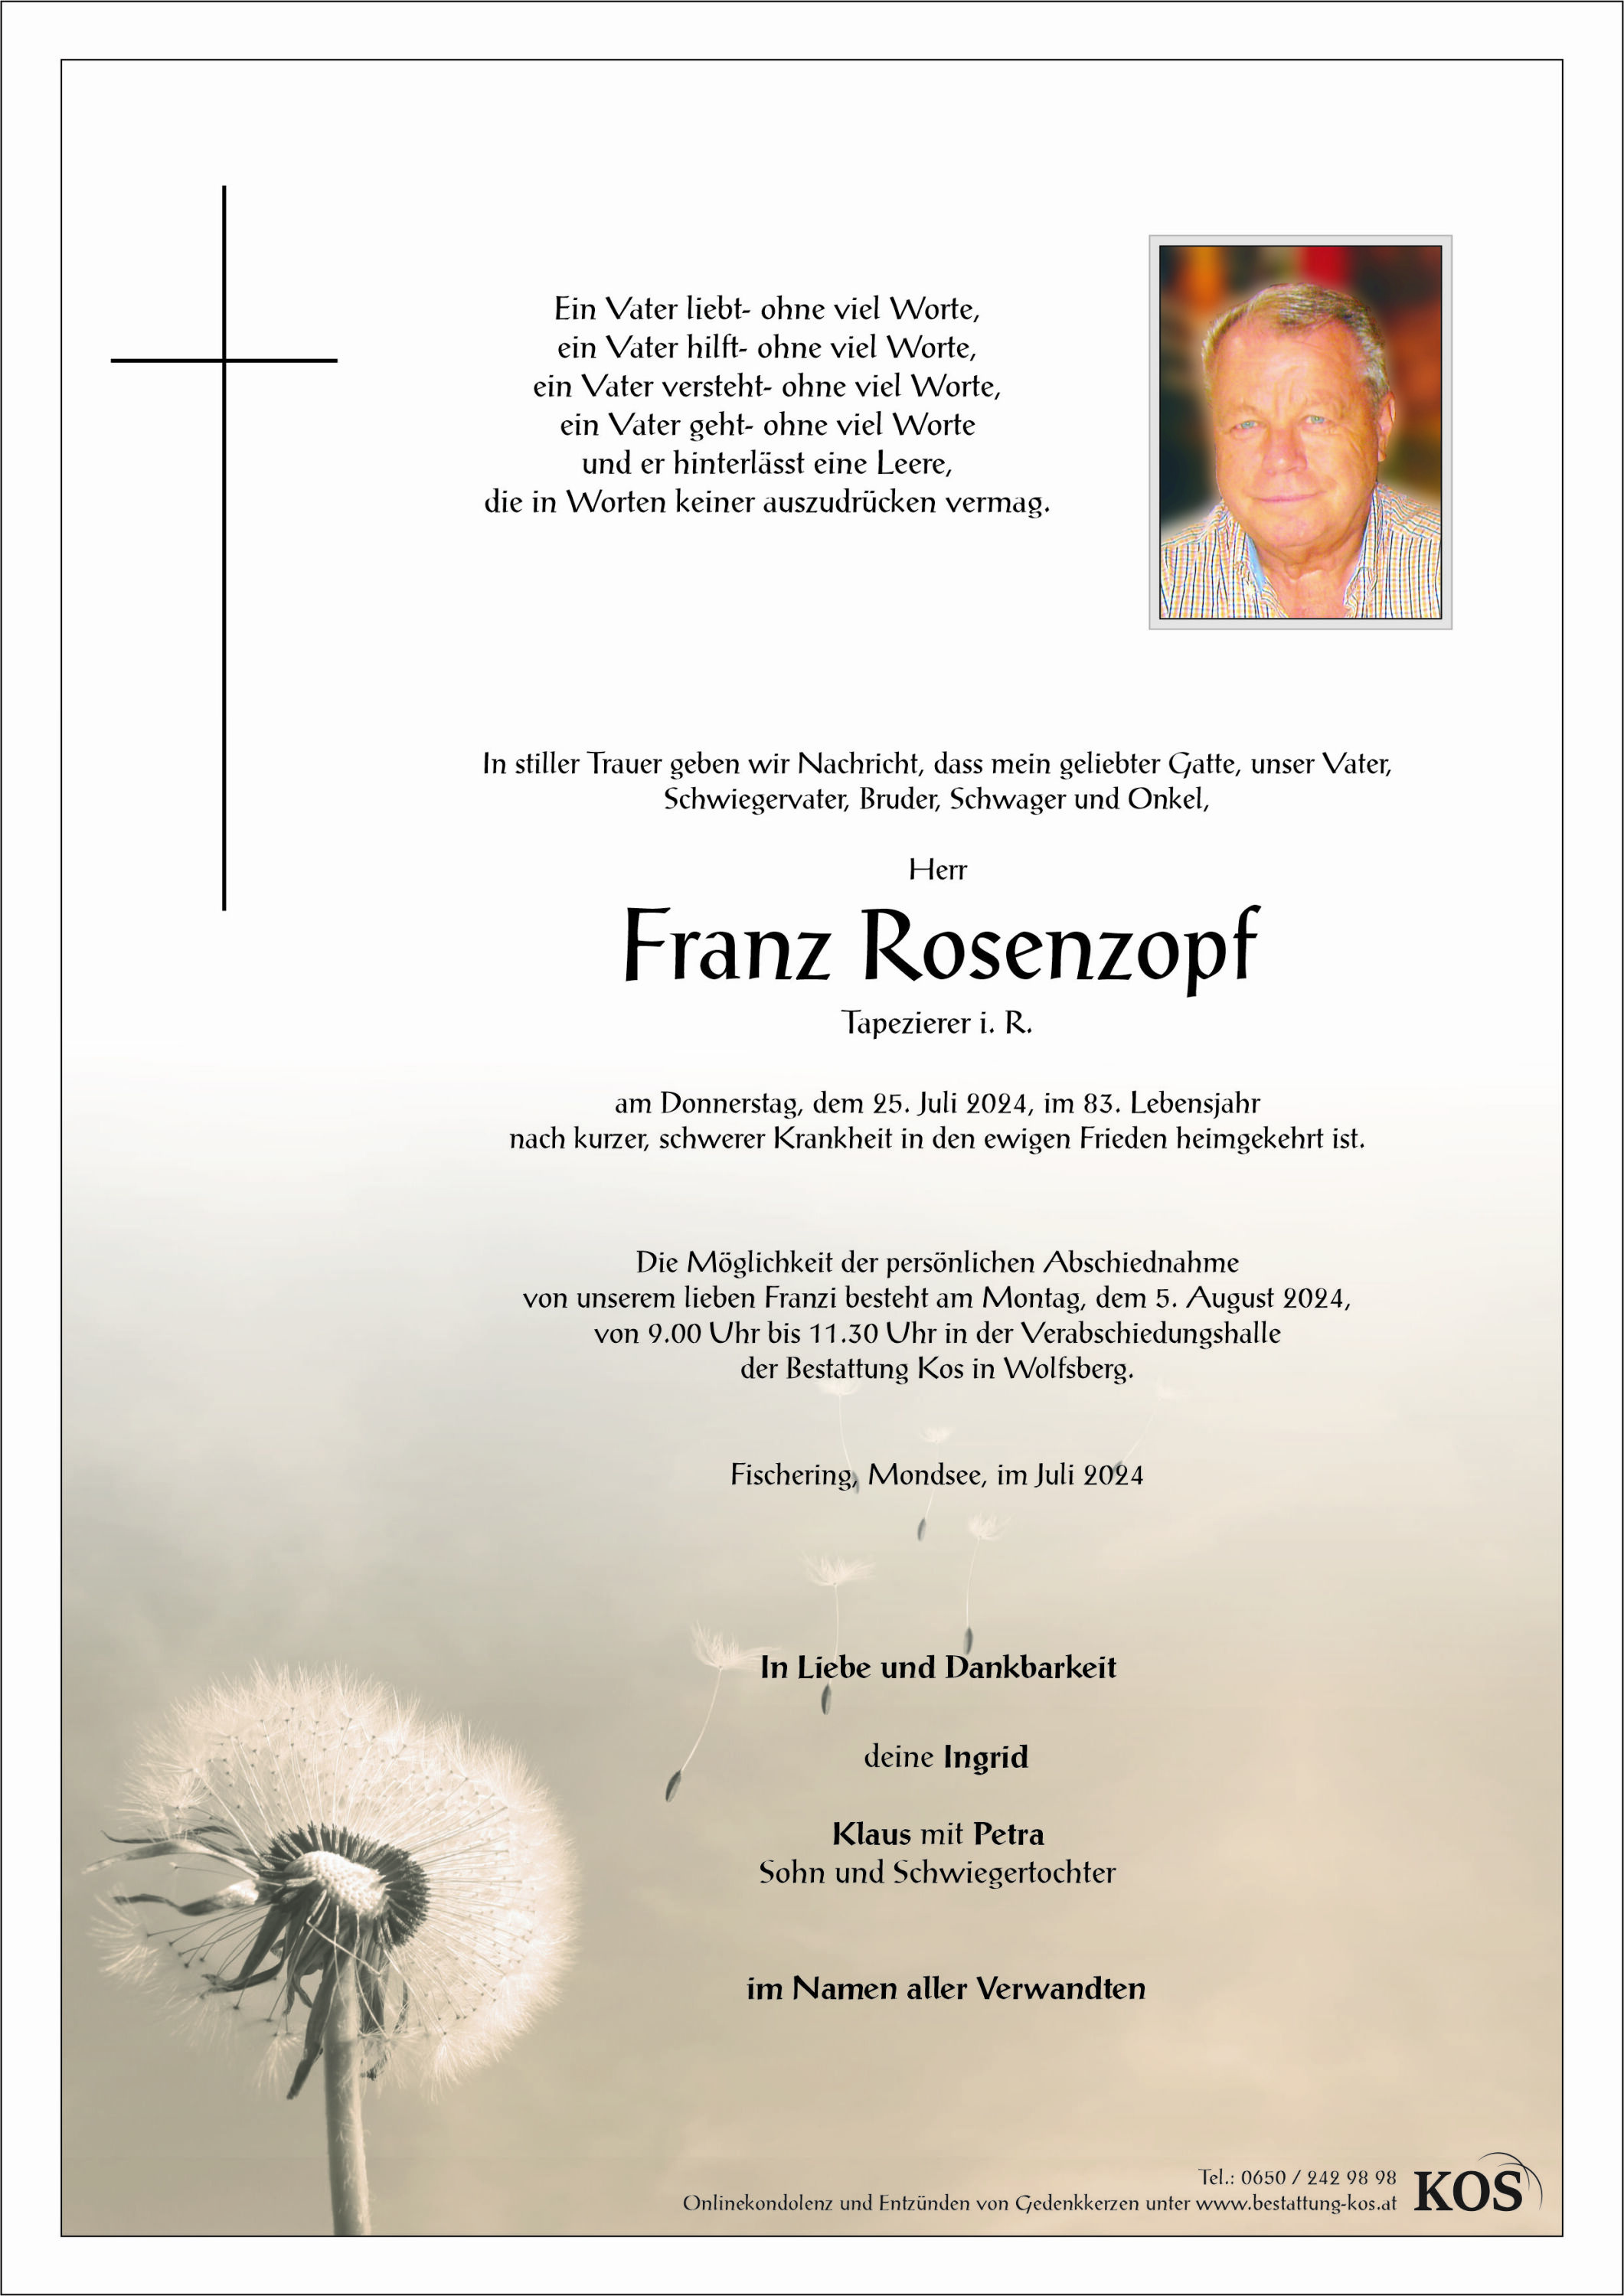 Franz Rosenzopf